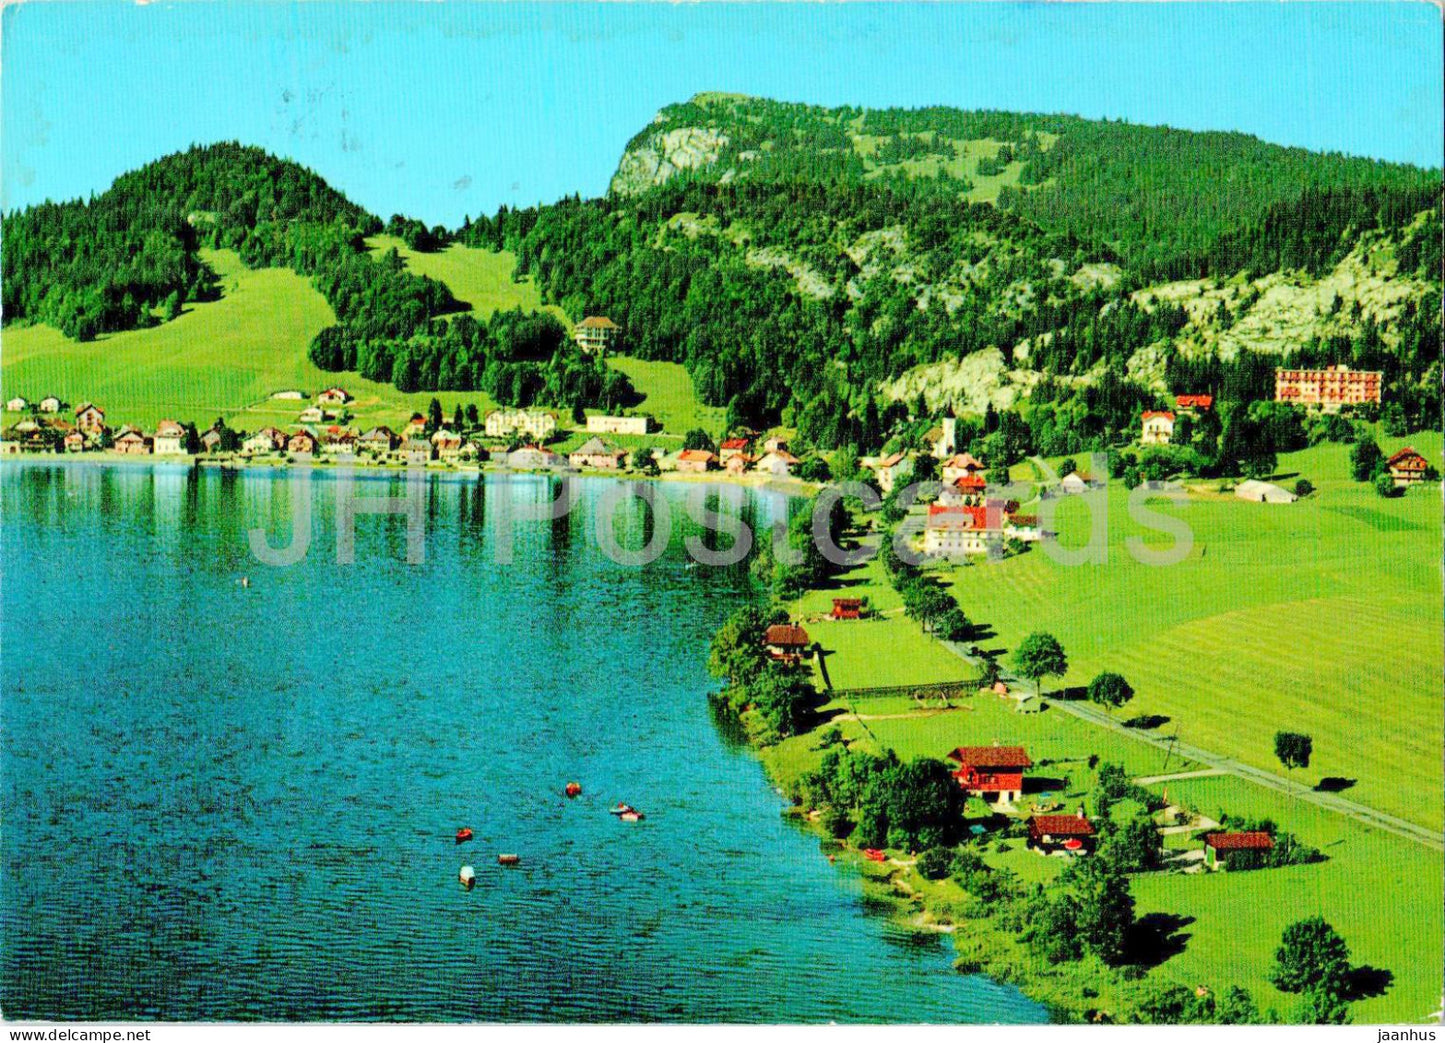 Le Pont - Lac de Joux et Dent de Vaulion - 12987 - 1979 - Switzerland - used - JH Postcards